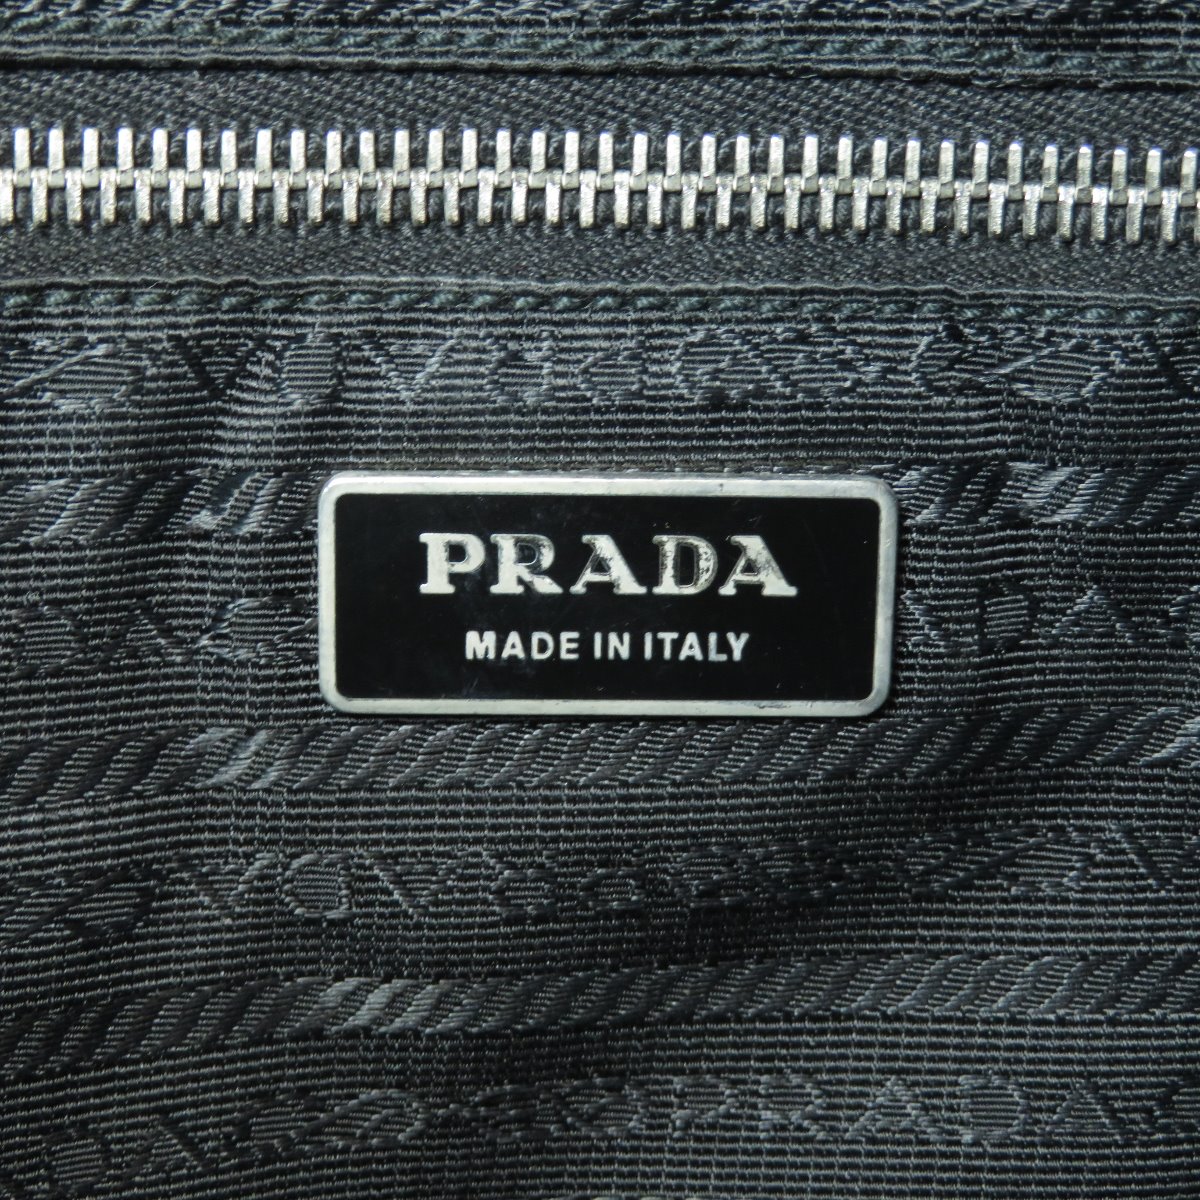 Sale PRADA Tote Bag with logo Nylon | eBay